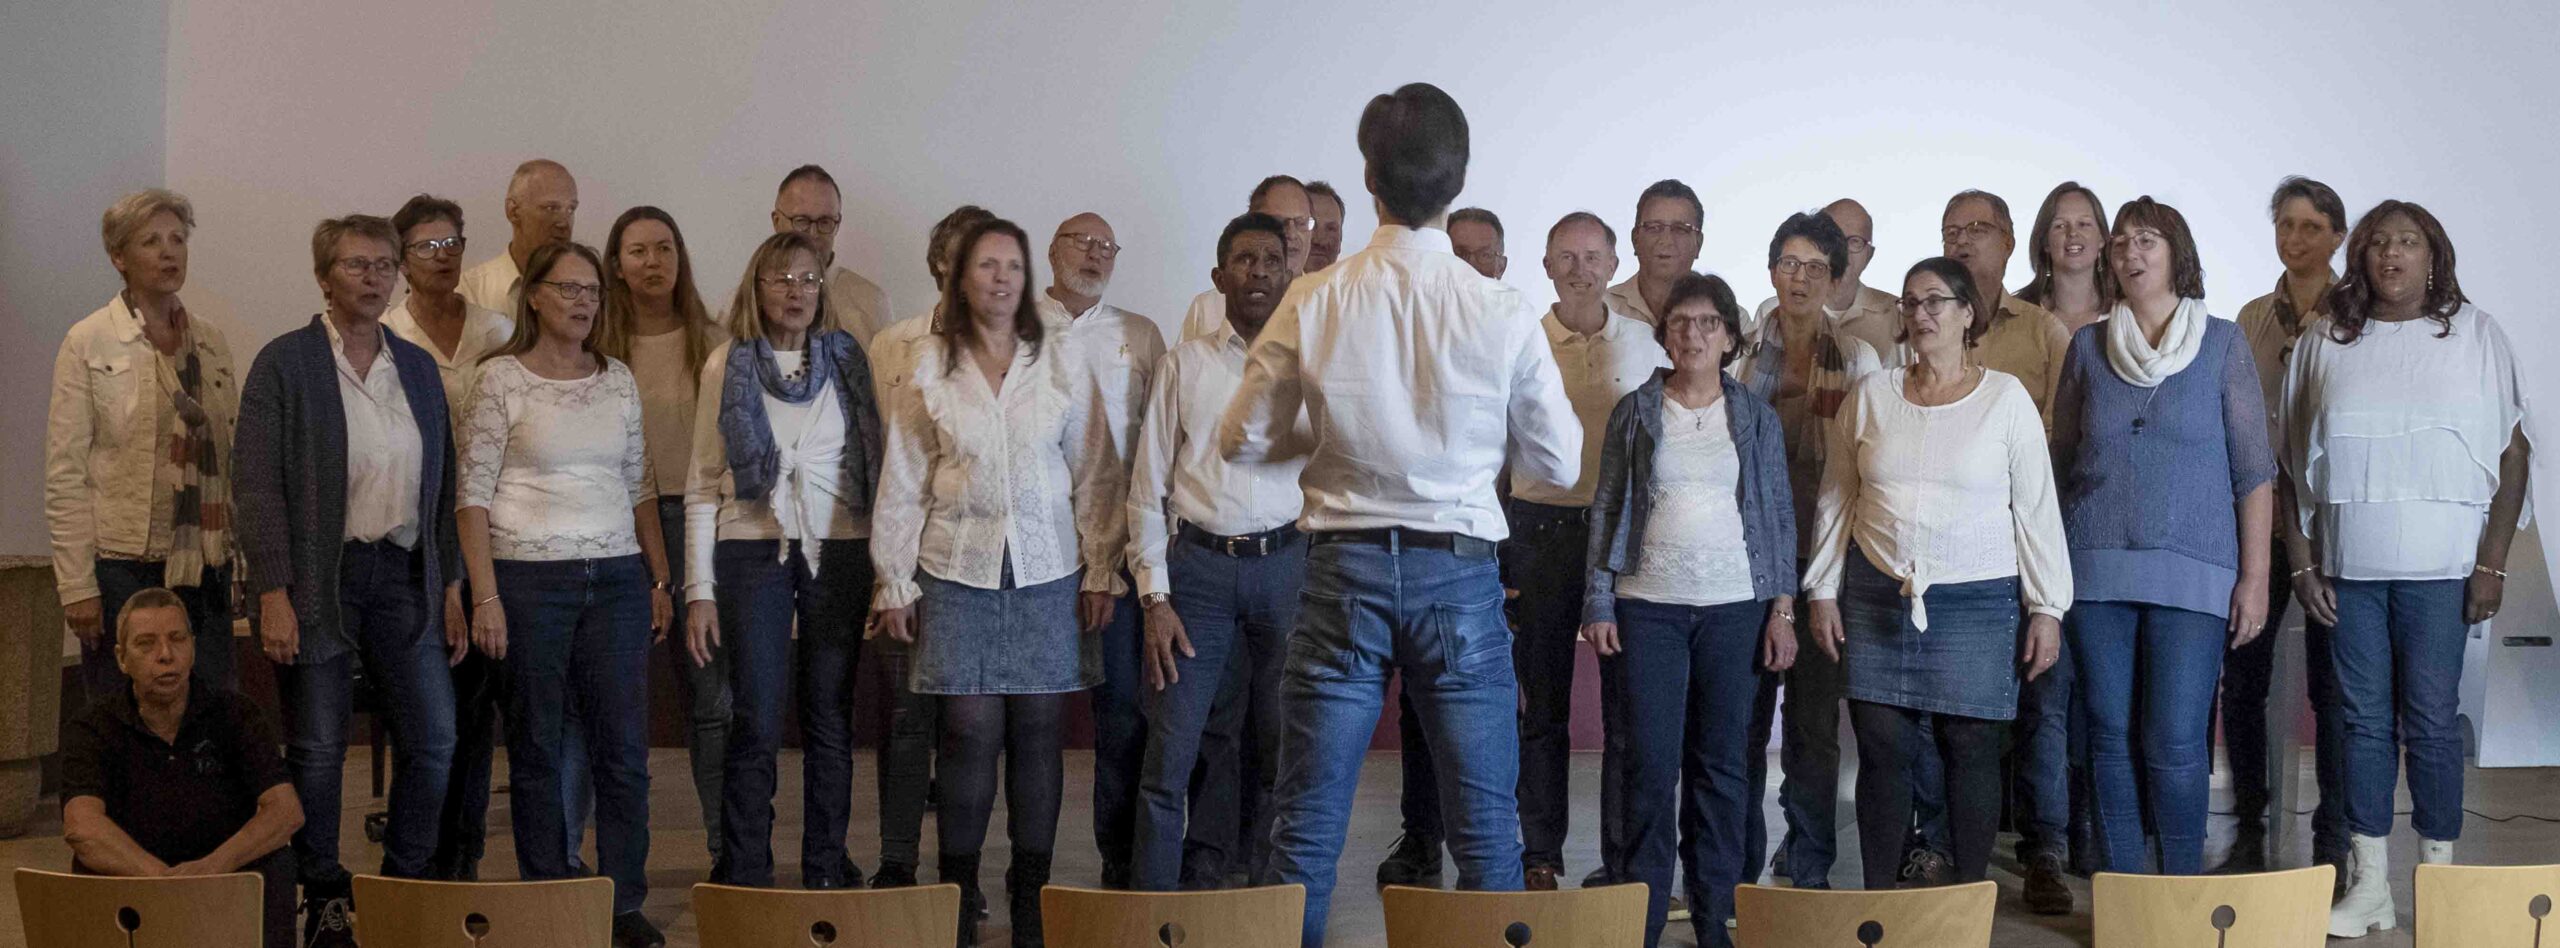 Foto van het koor Intercession, allen gekleed in wit -blauw. Voor de groep staat een dirigent. 